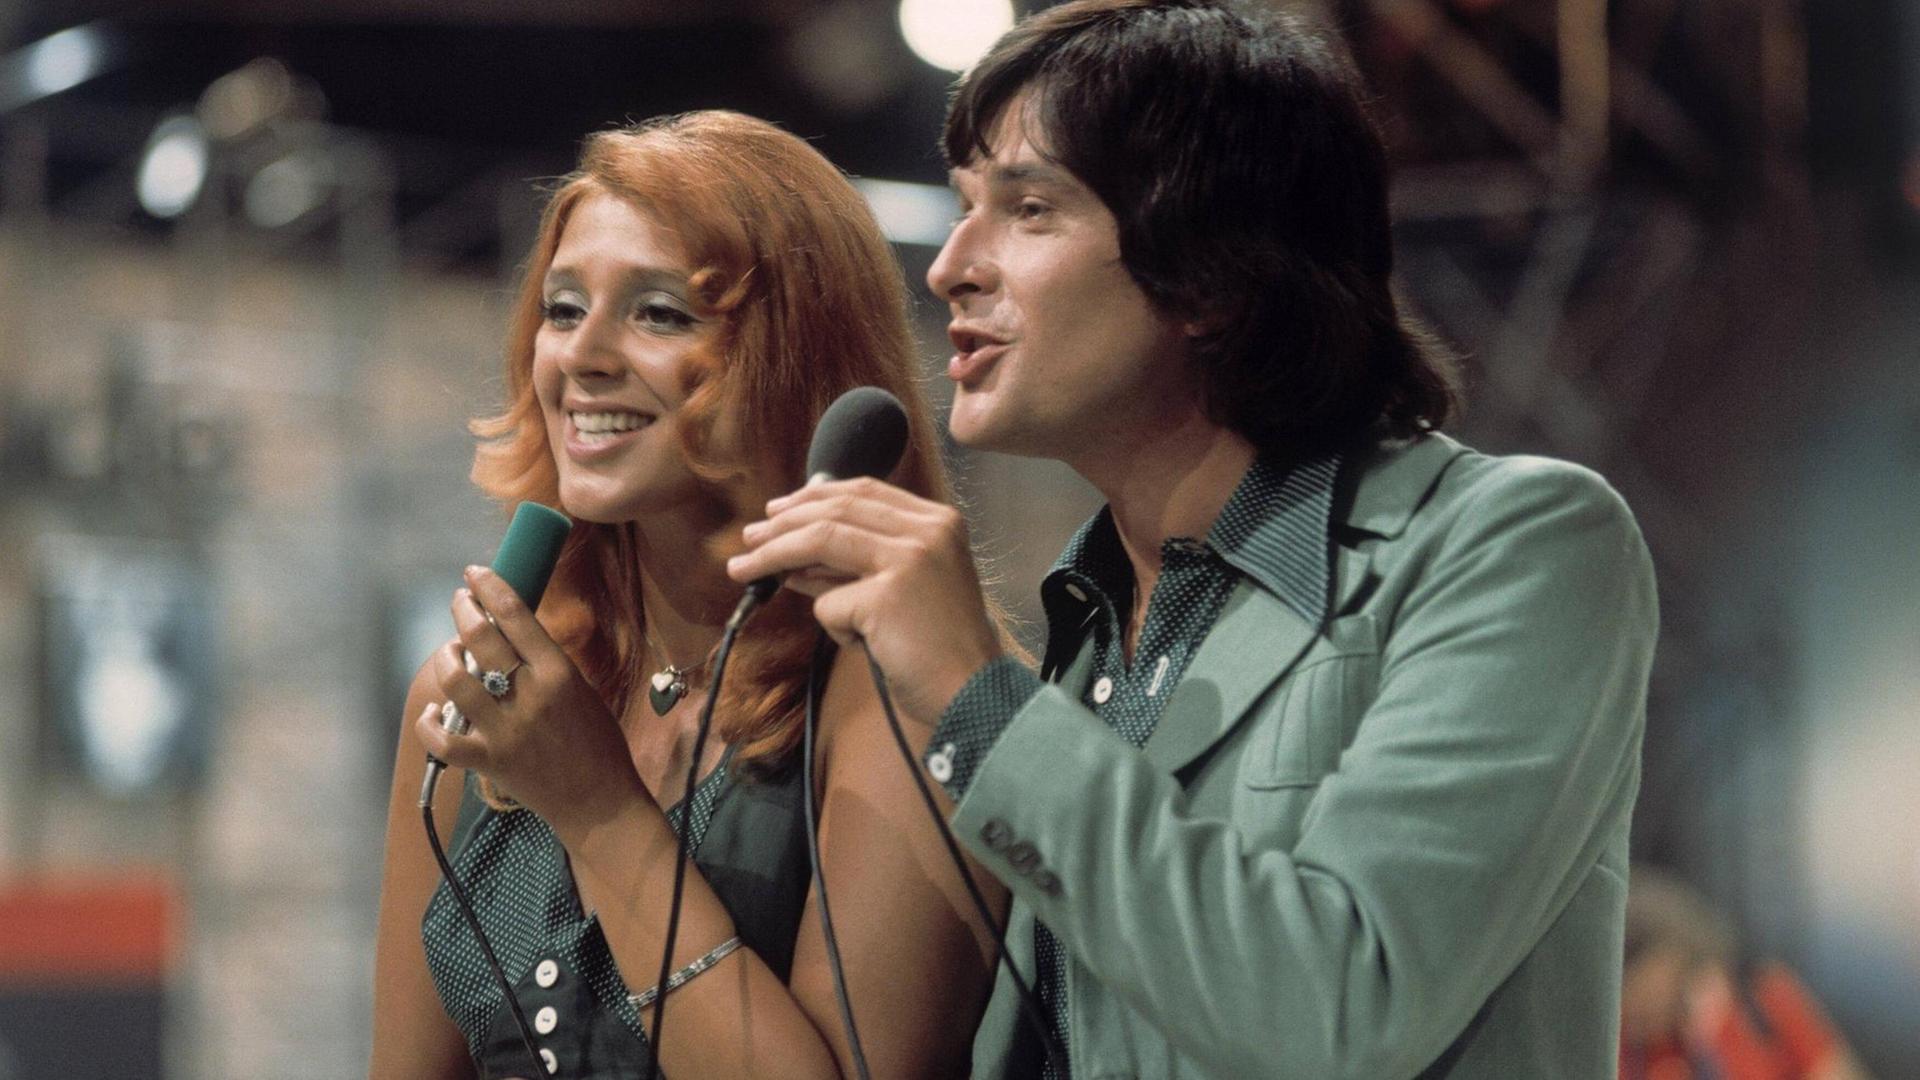 Das Gesangsduo Cindy und Bert bei deinem Auftritt in der Sendung Hitparade von 1975.